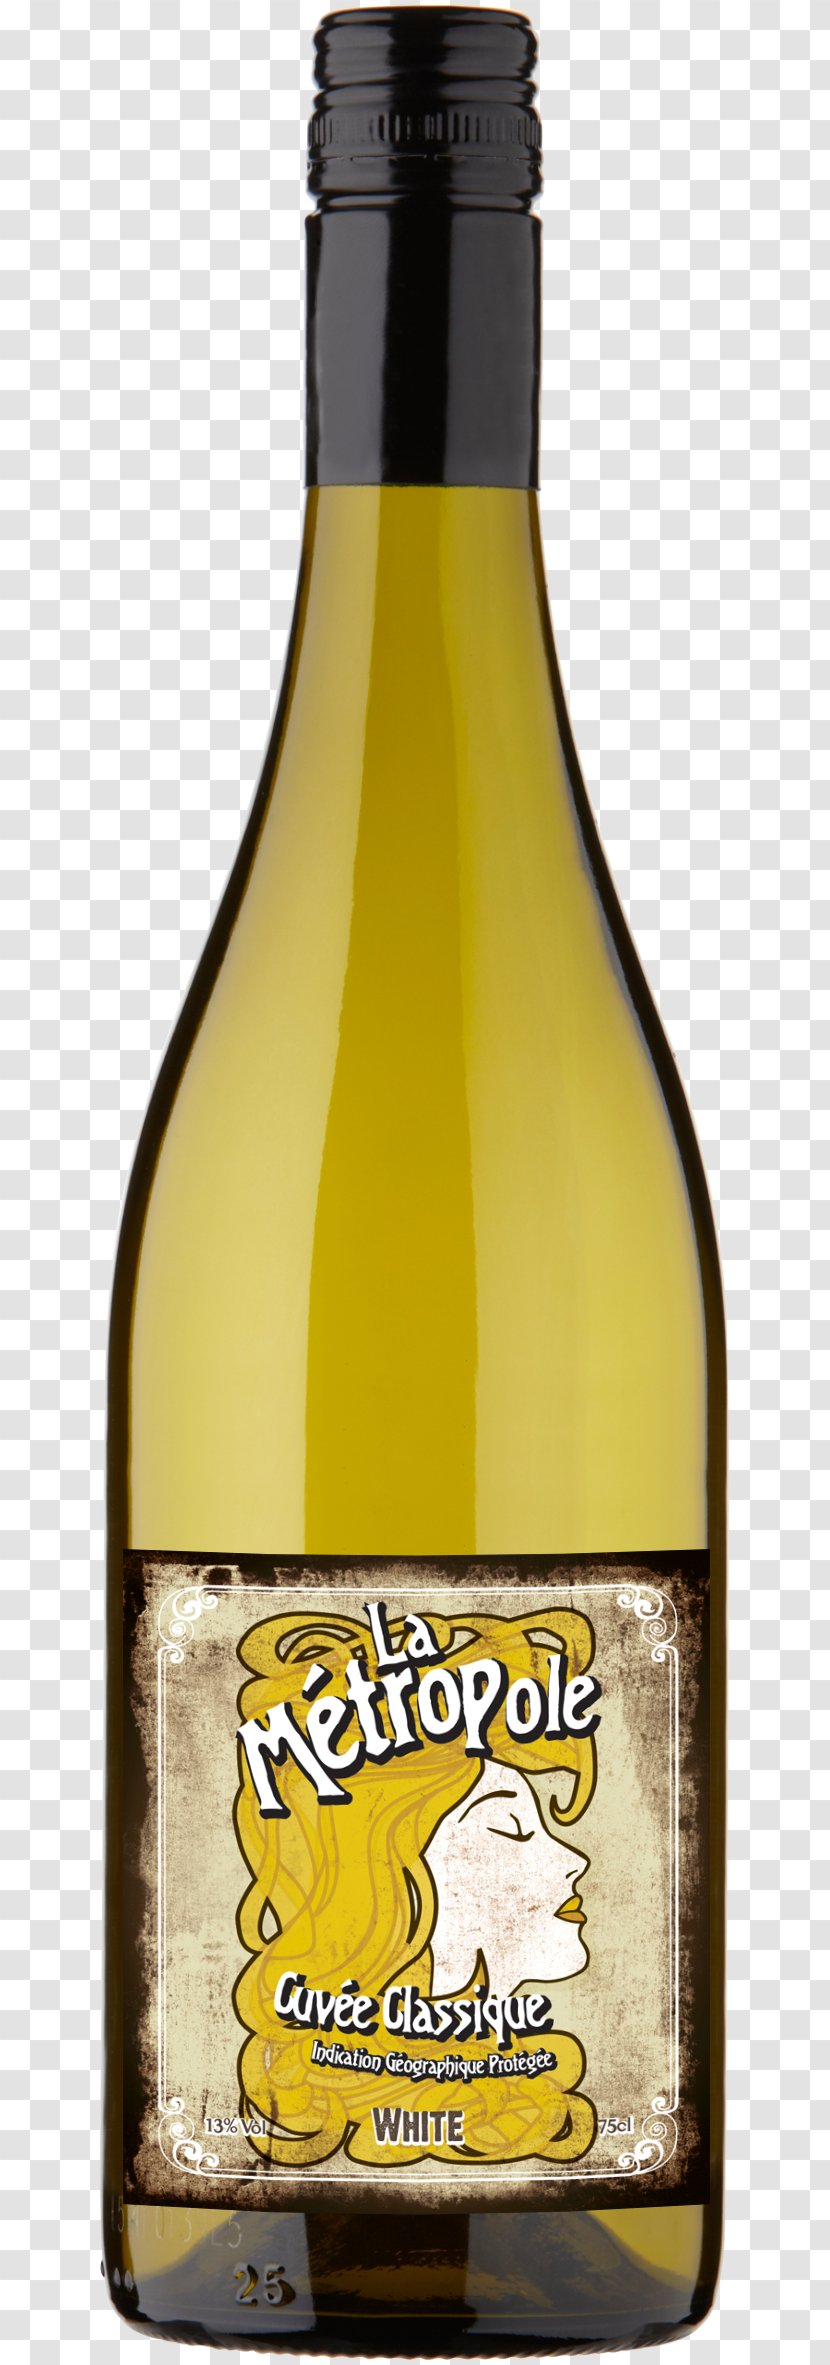 Chardonnay White Wine Sauvignon Blanc Cabernet - Vintage Grapes France Transparent PNG